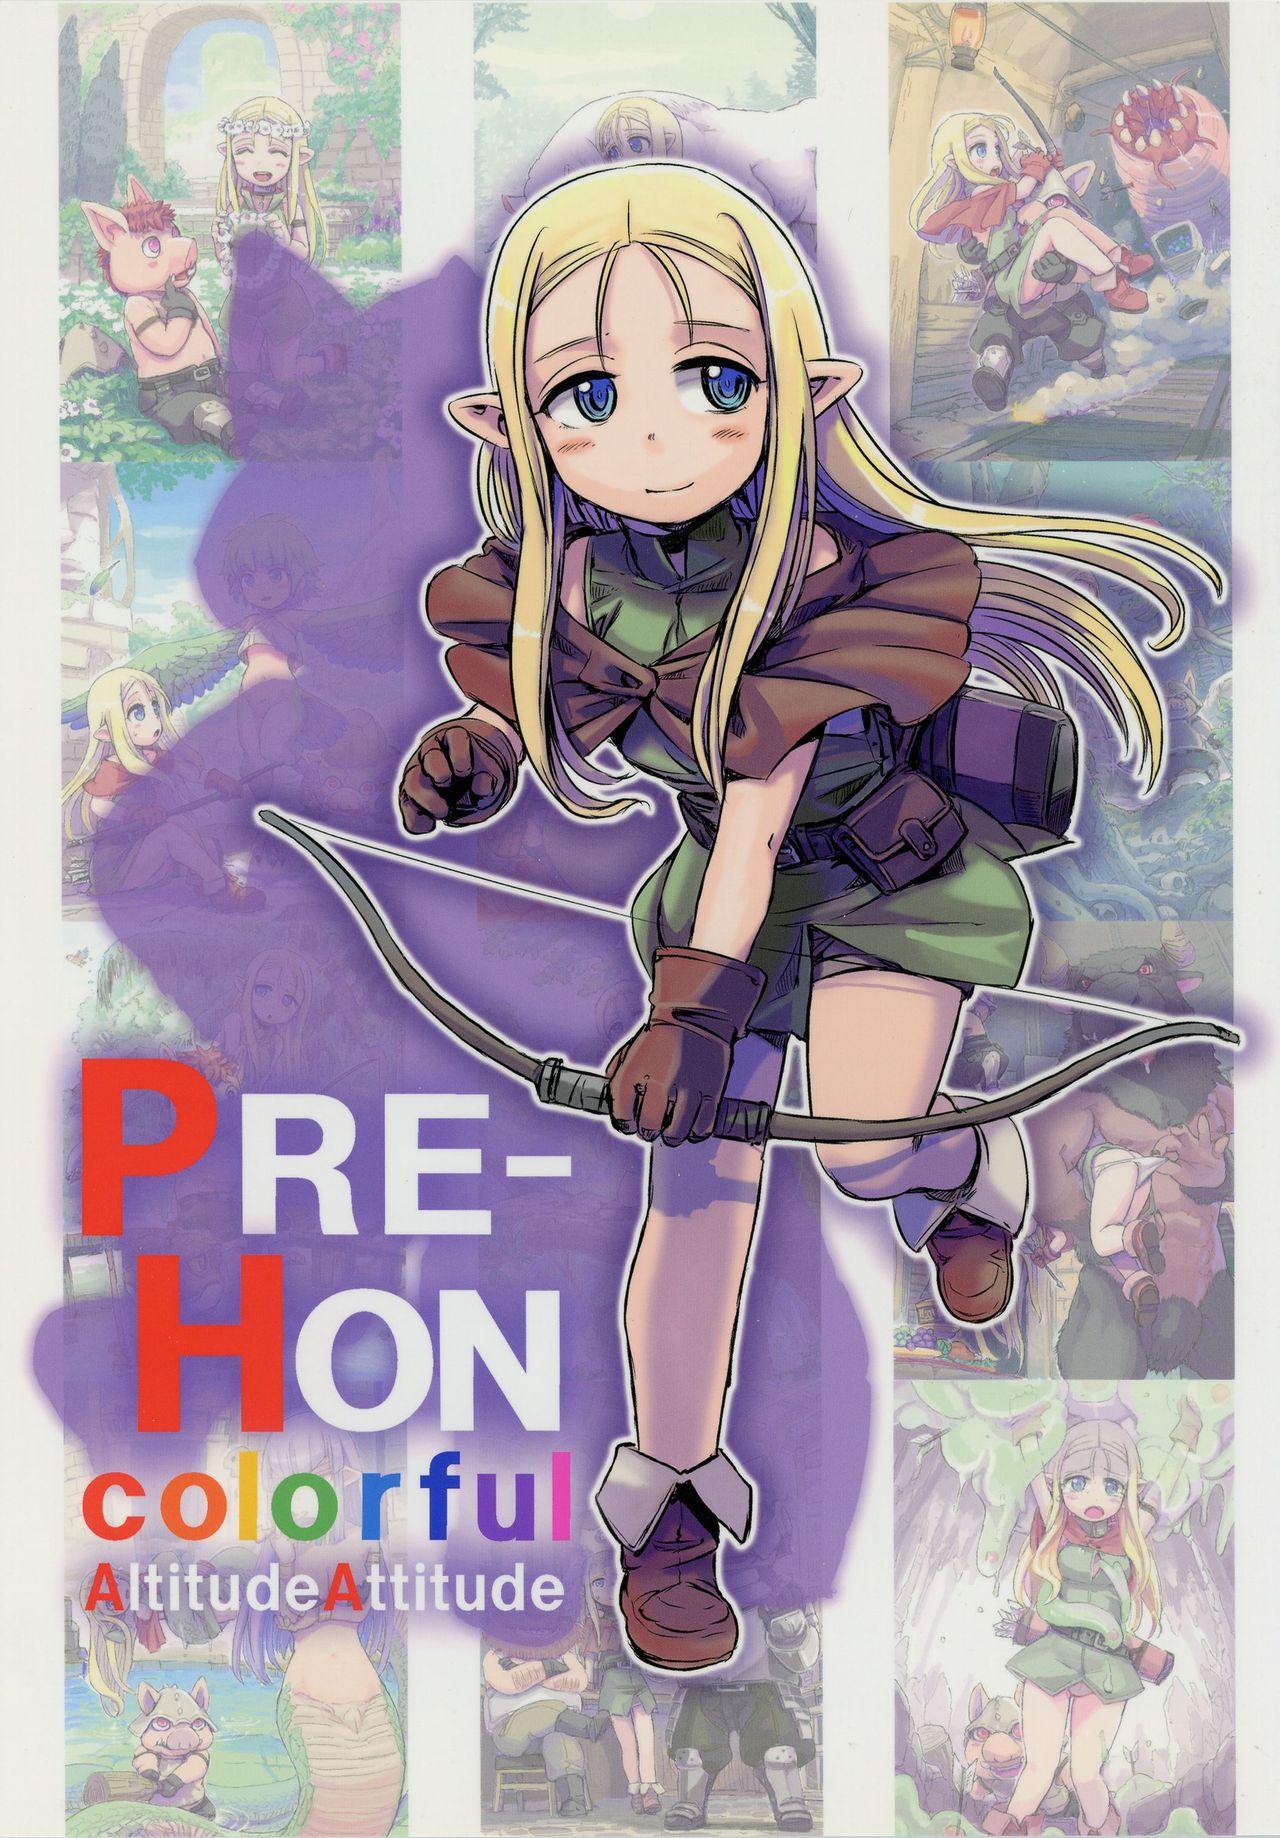 PRE-HON colorful 0